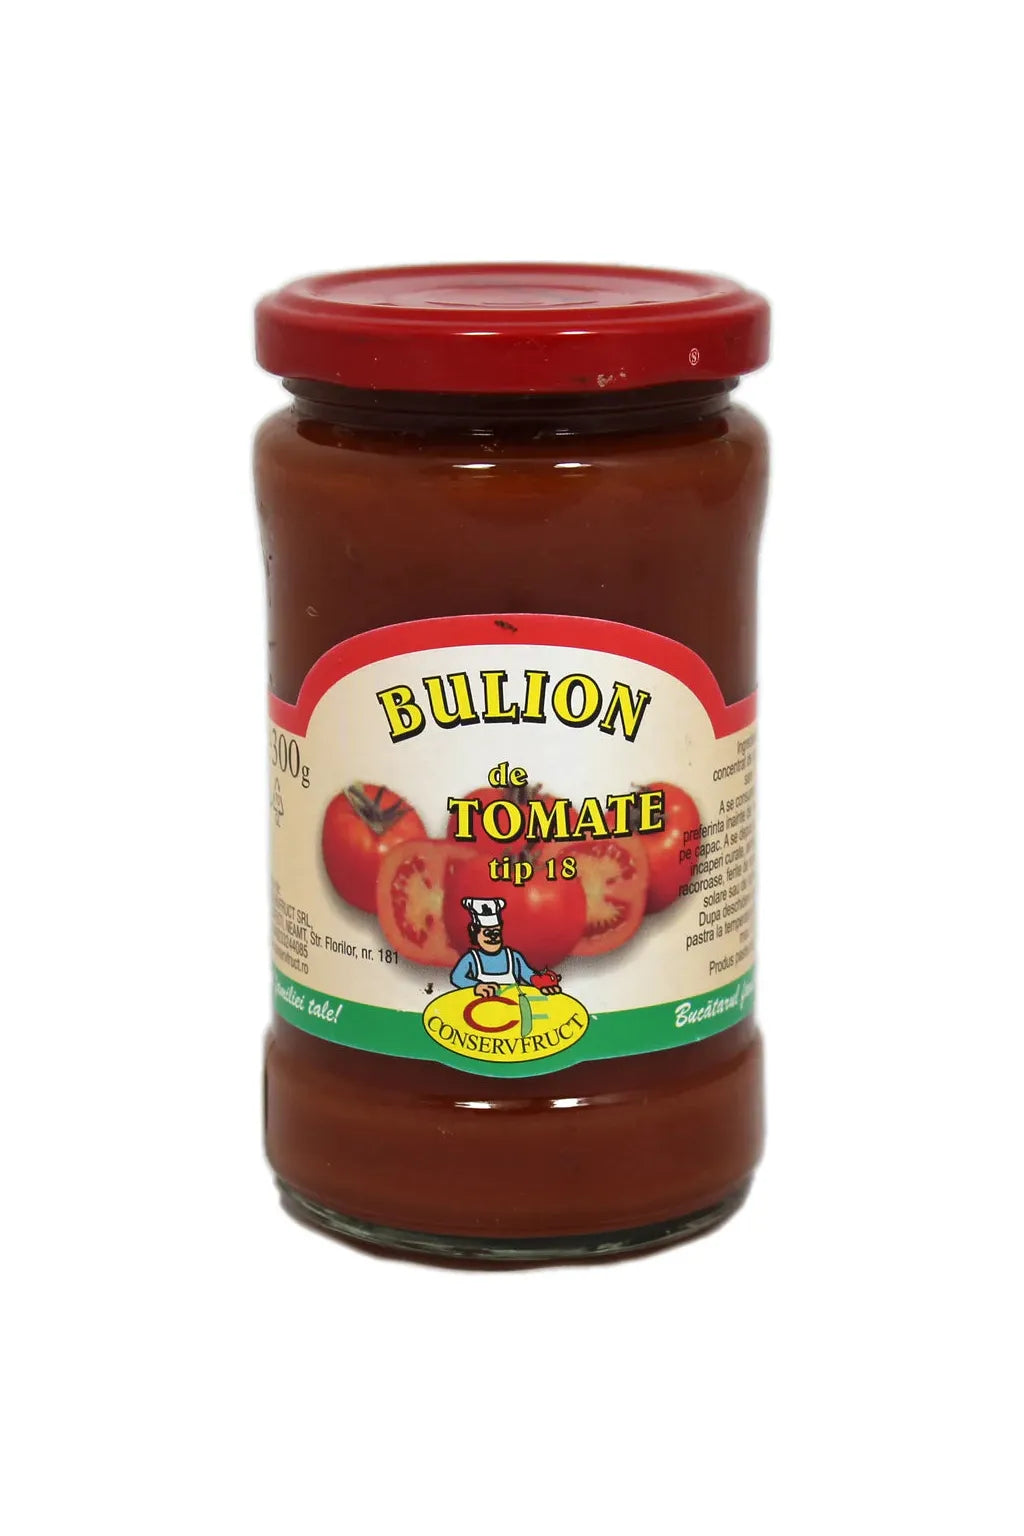 Tomato Puree - Bulion de Tomate - 18% - Conservfruct